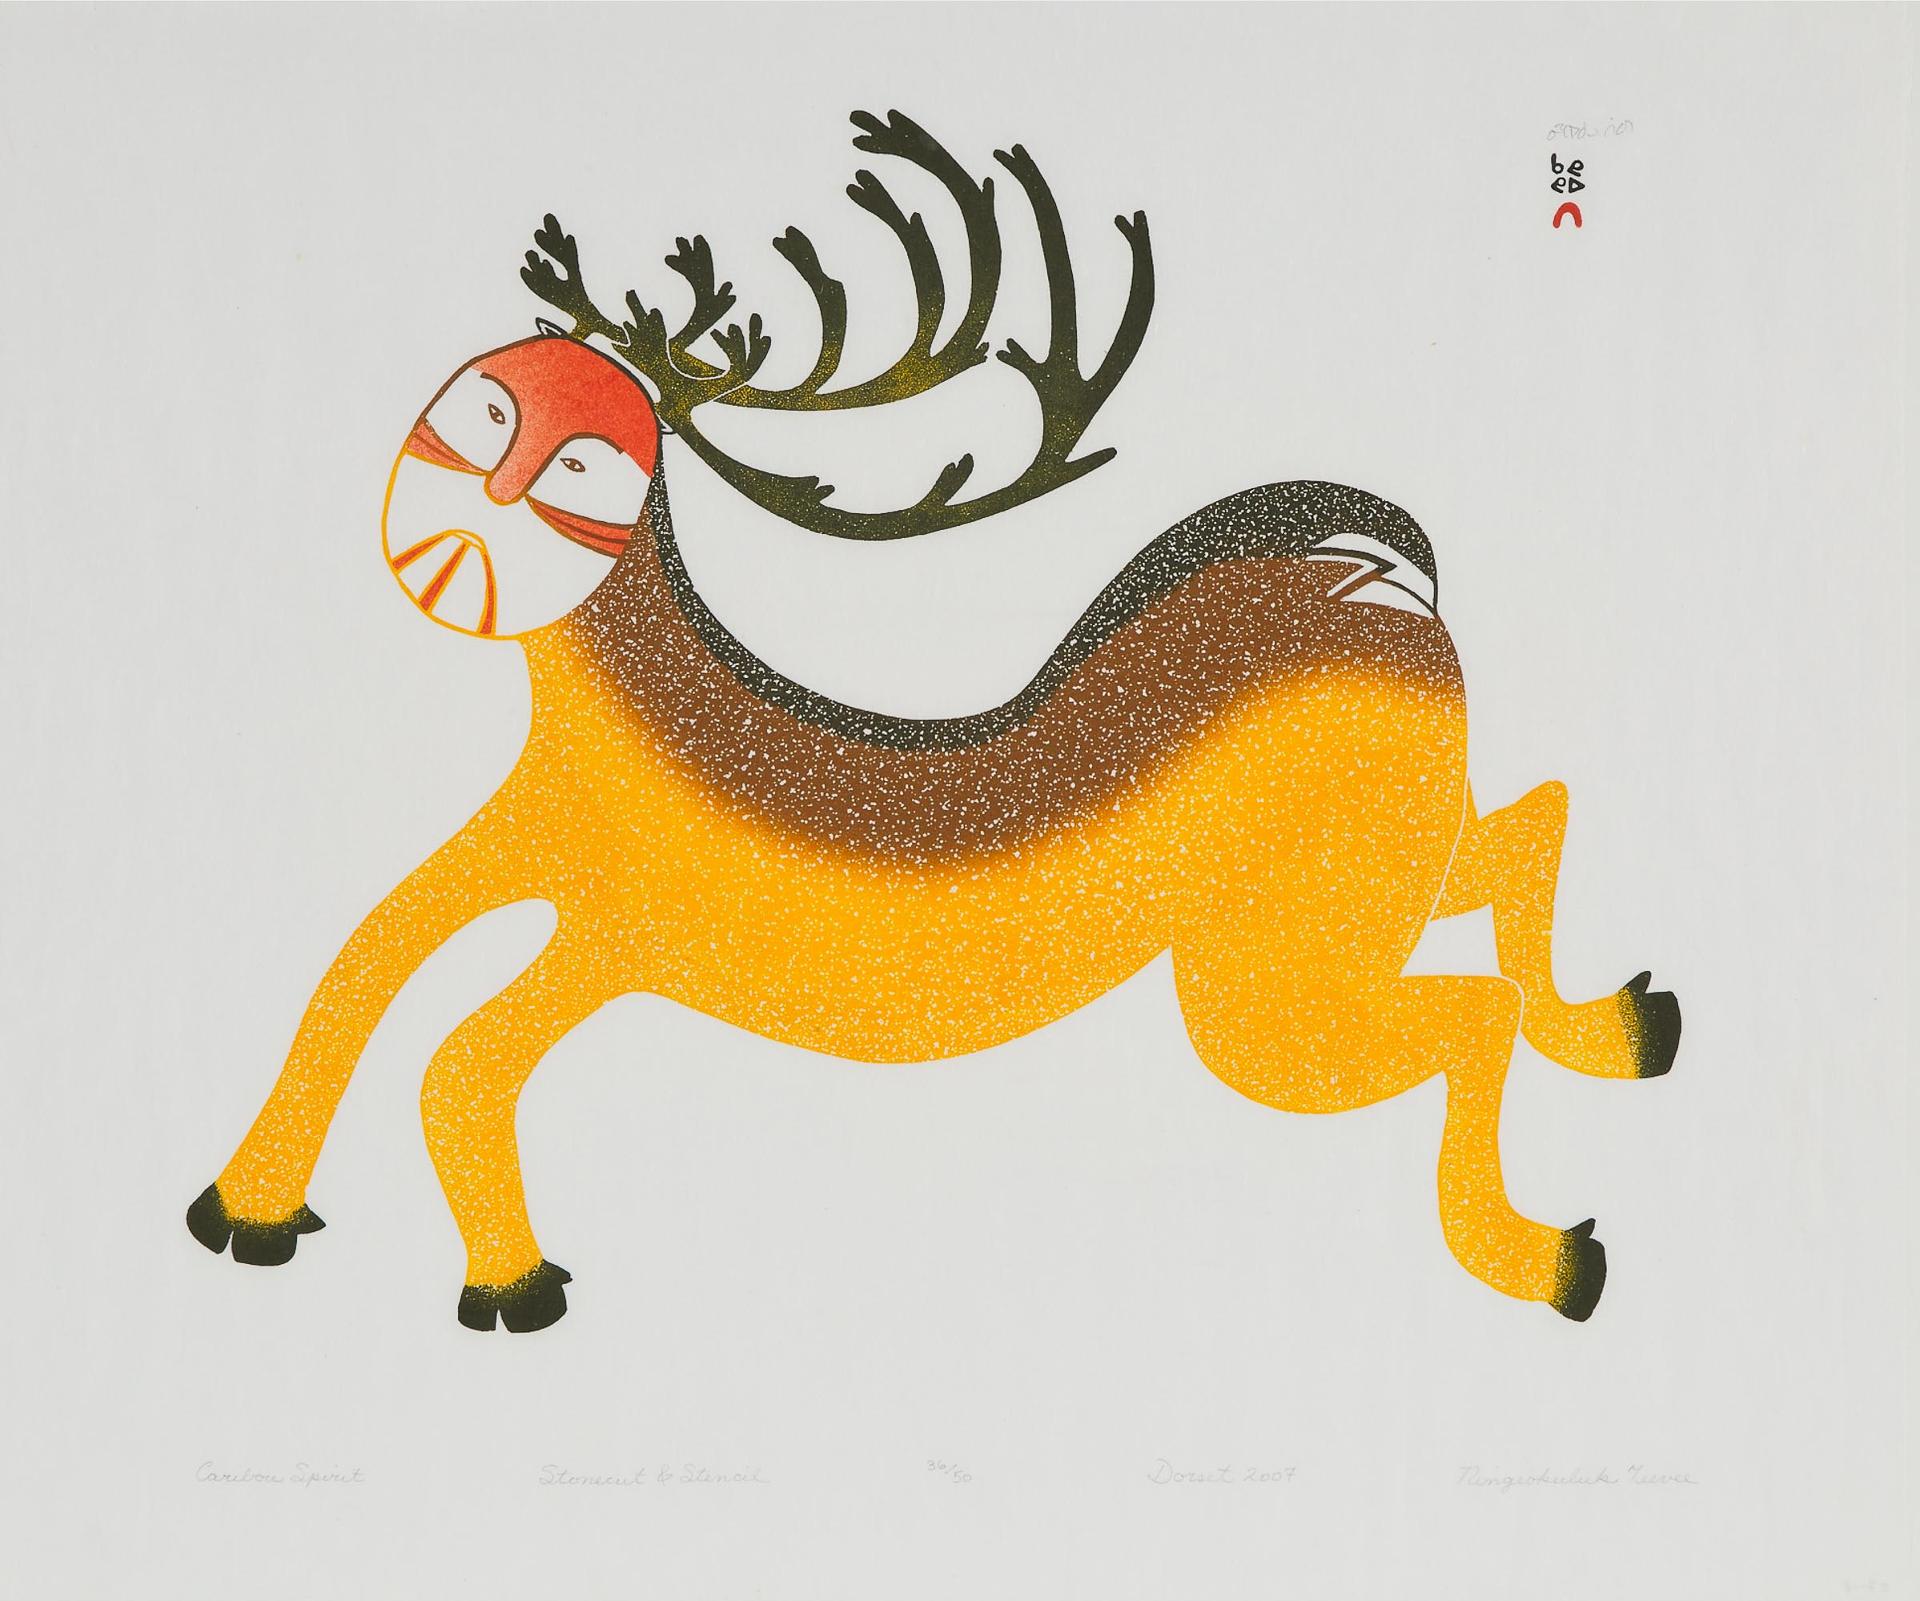 Ningeokuluk Teevee (1963) - Caribou Spirit